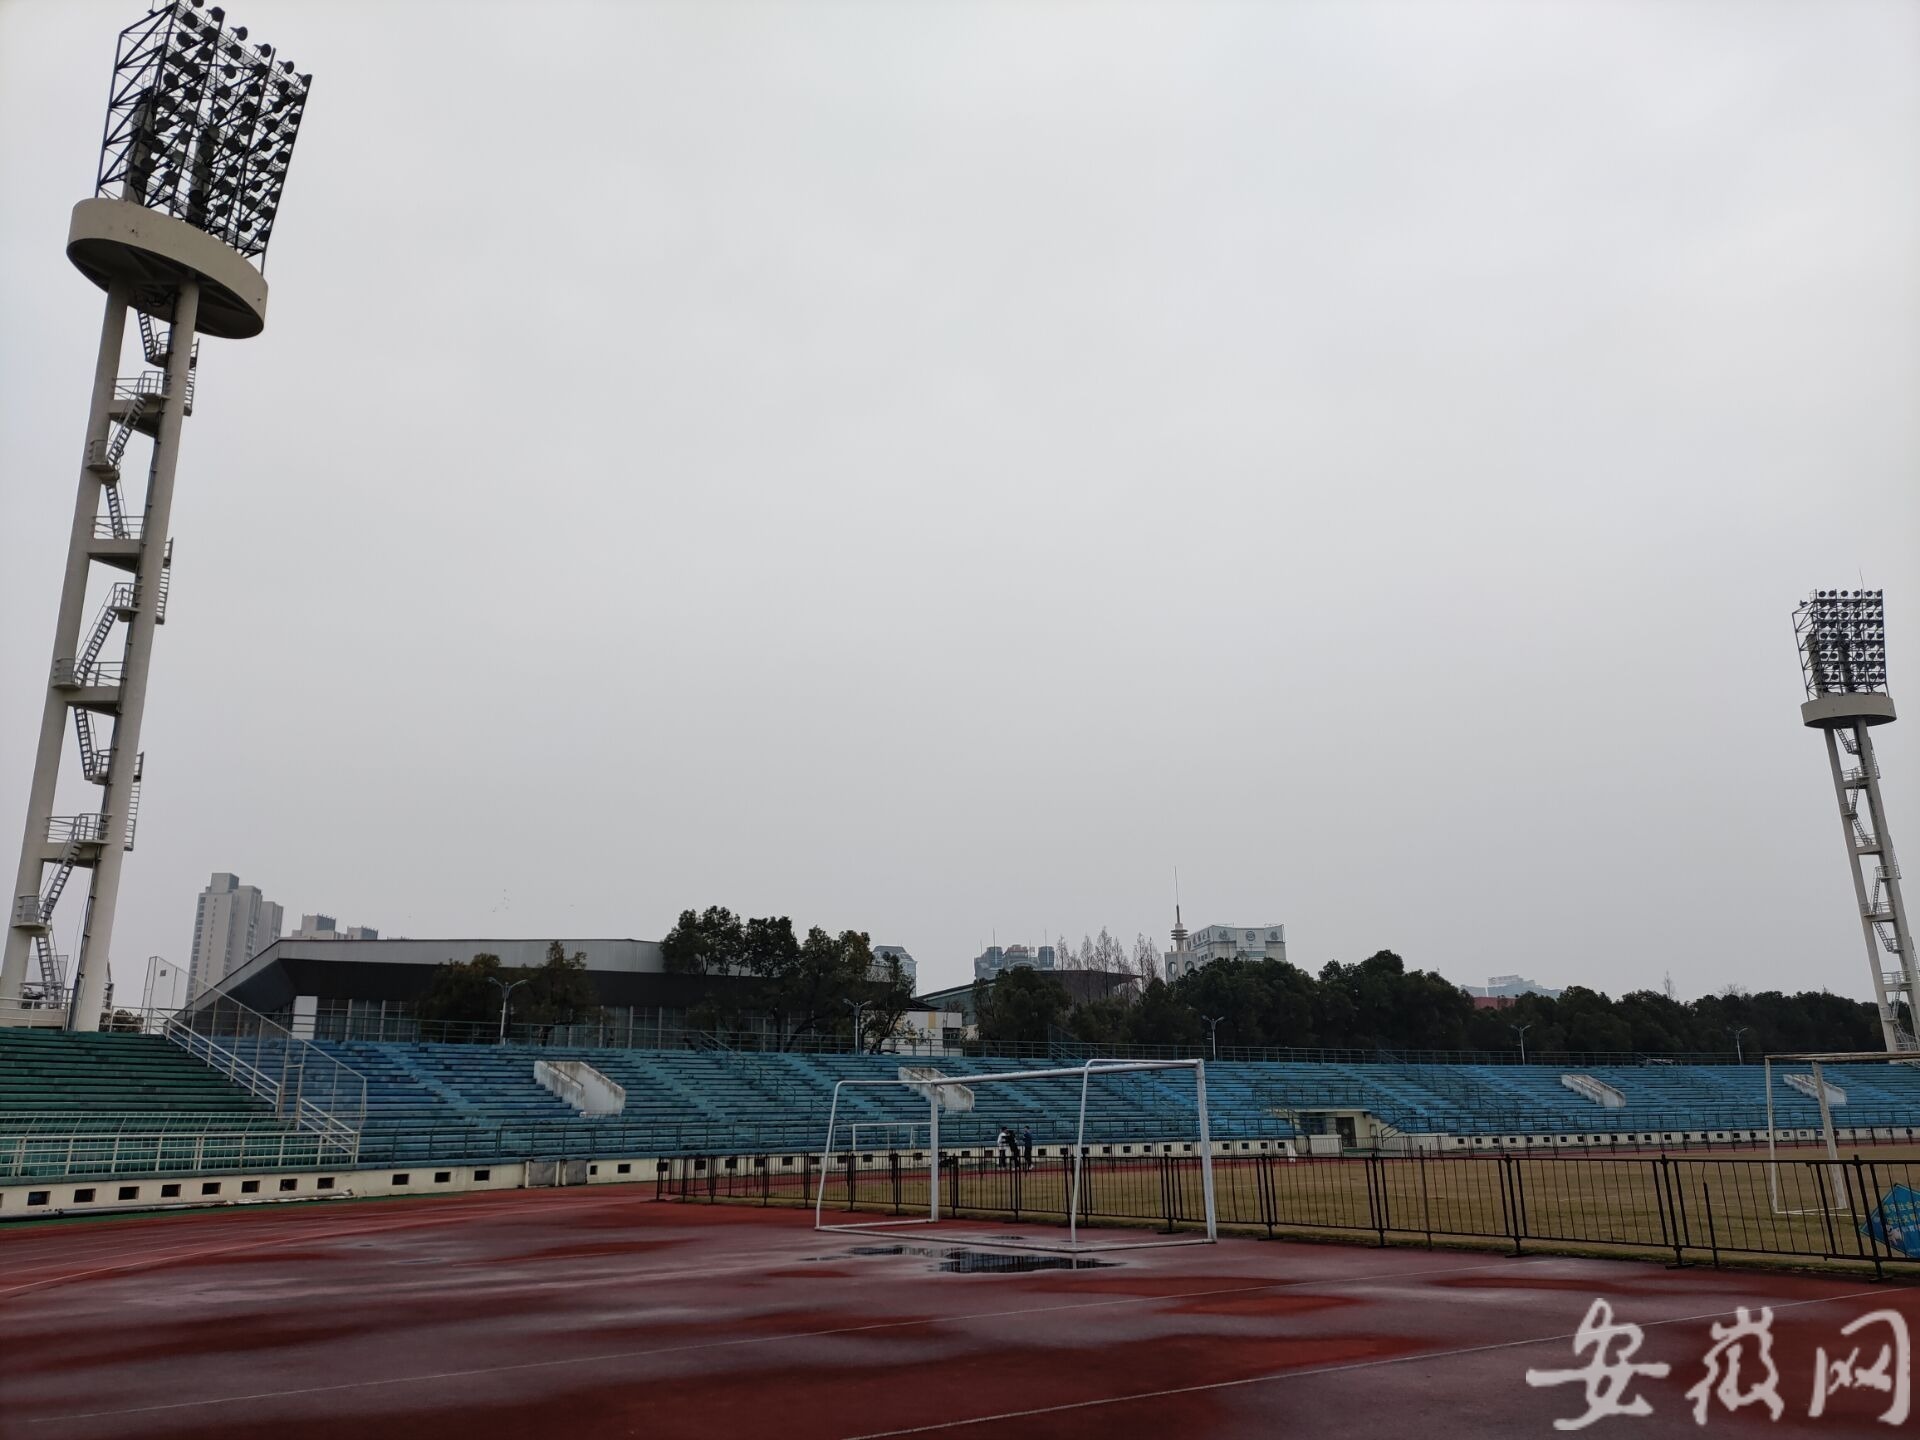 有网友称安徽省人民体育场将要拆除多部门表示未听说